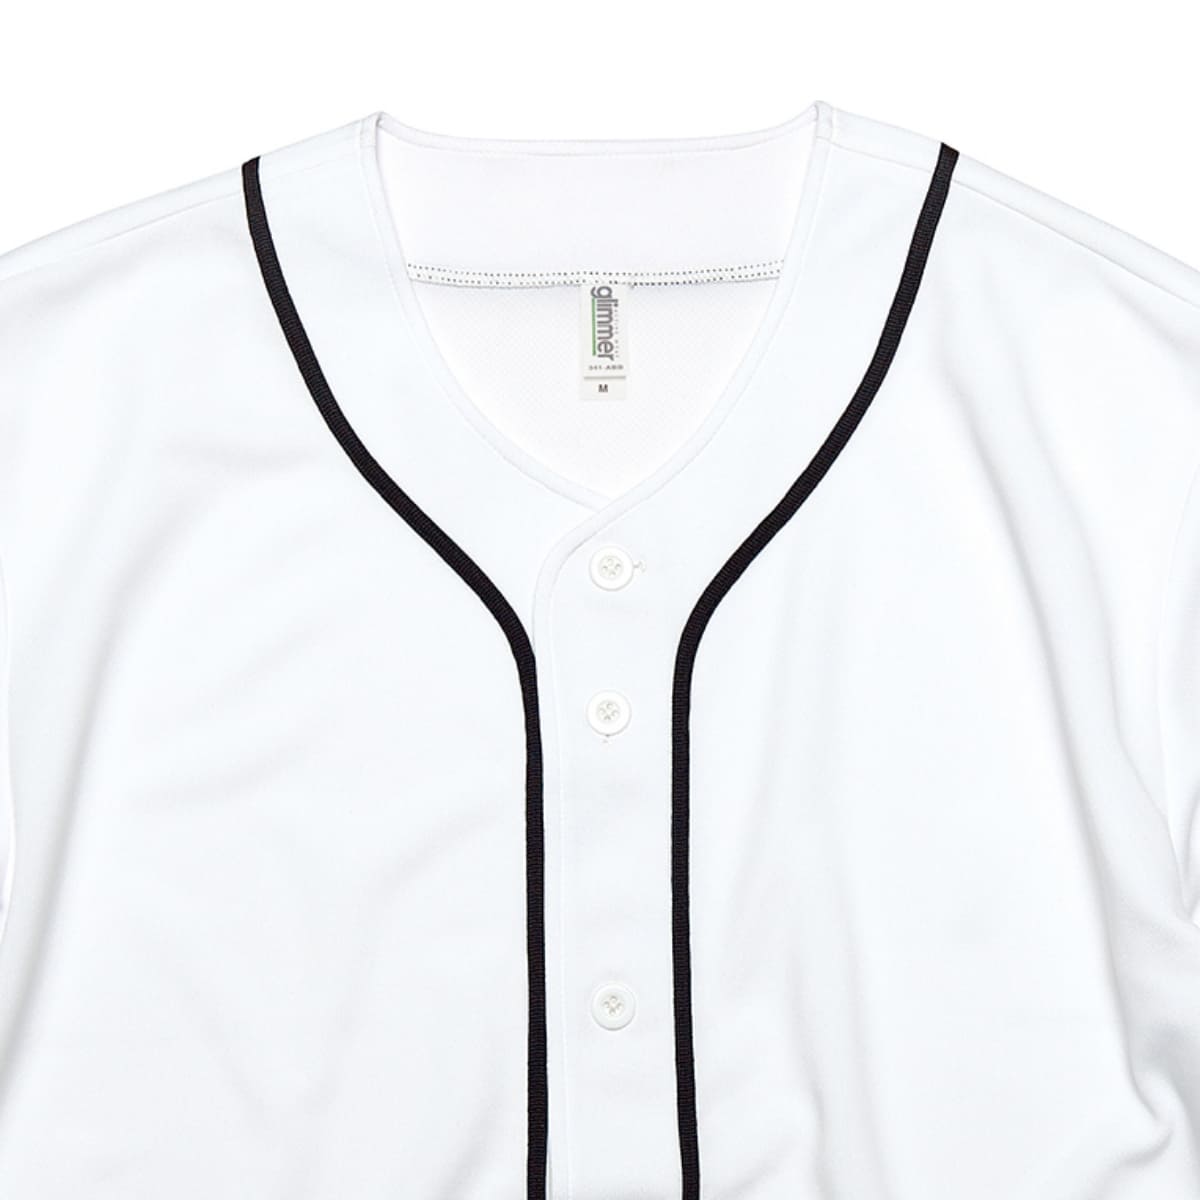 4.4オンス ドライ ベースボールシャツ | メンズ | 1枚 | 00341-ABB | ホワイト